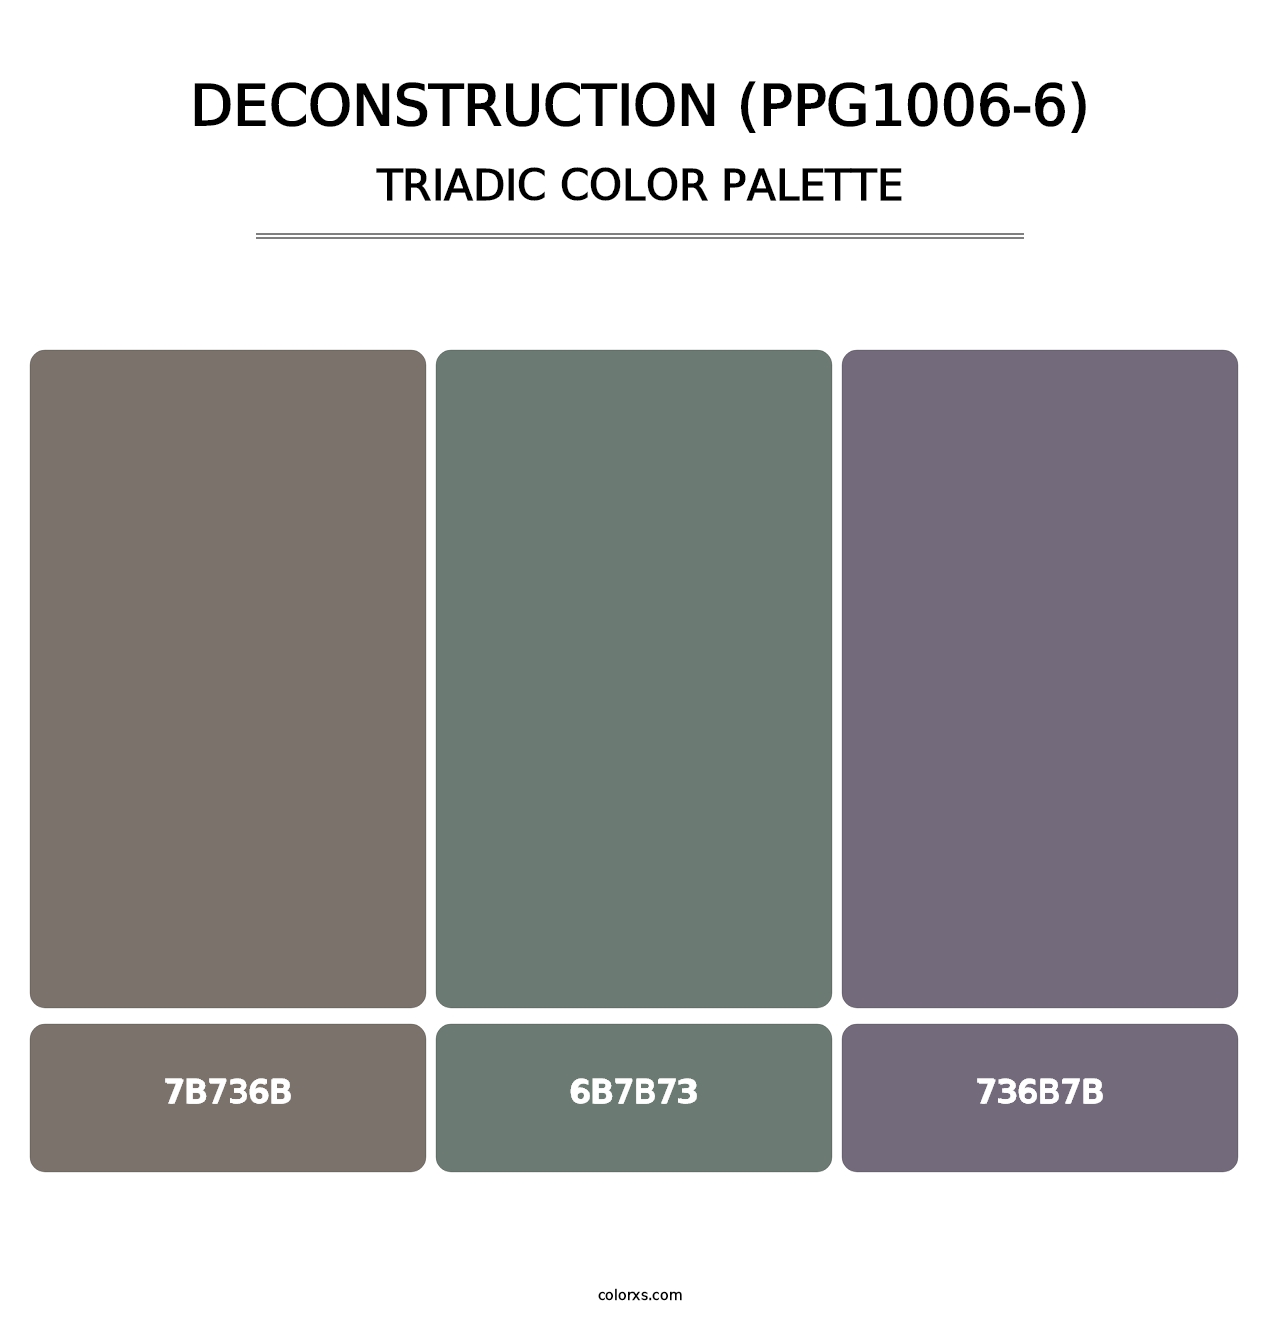 Deconstruction (PPG1006-6) - Triadic Color Palette